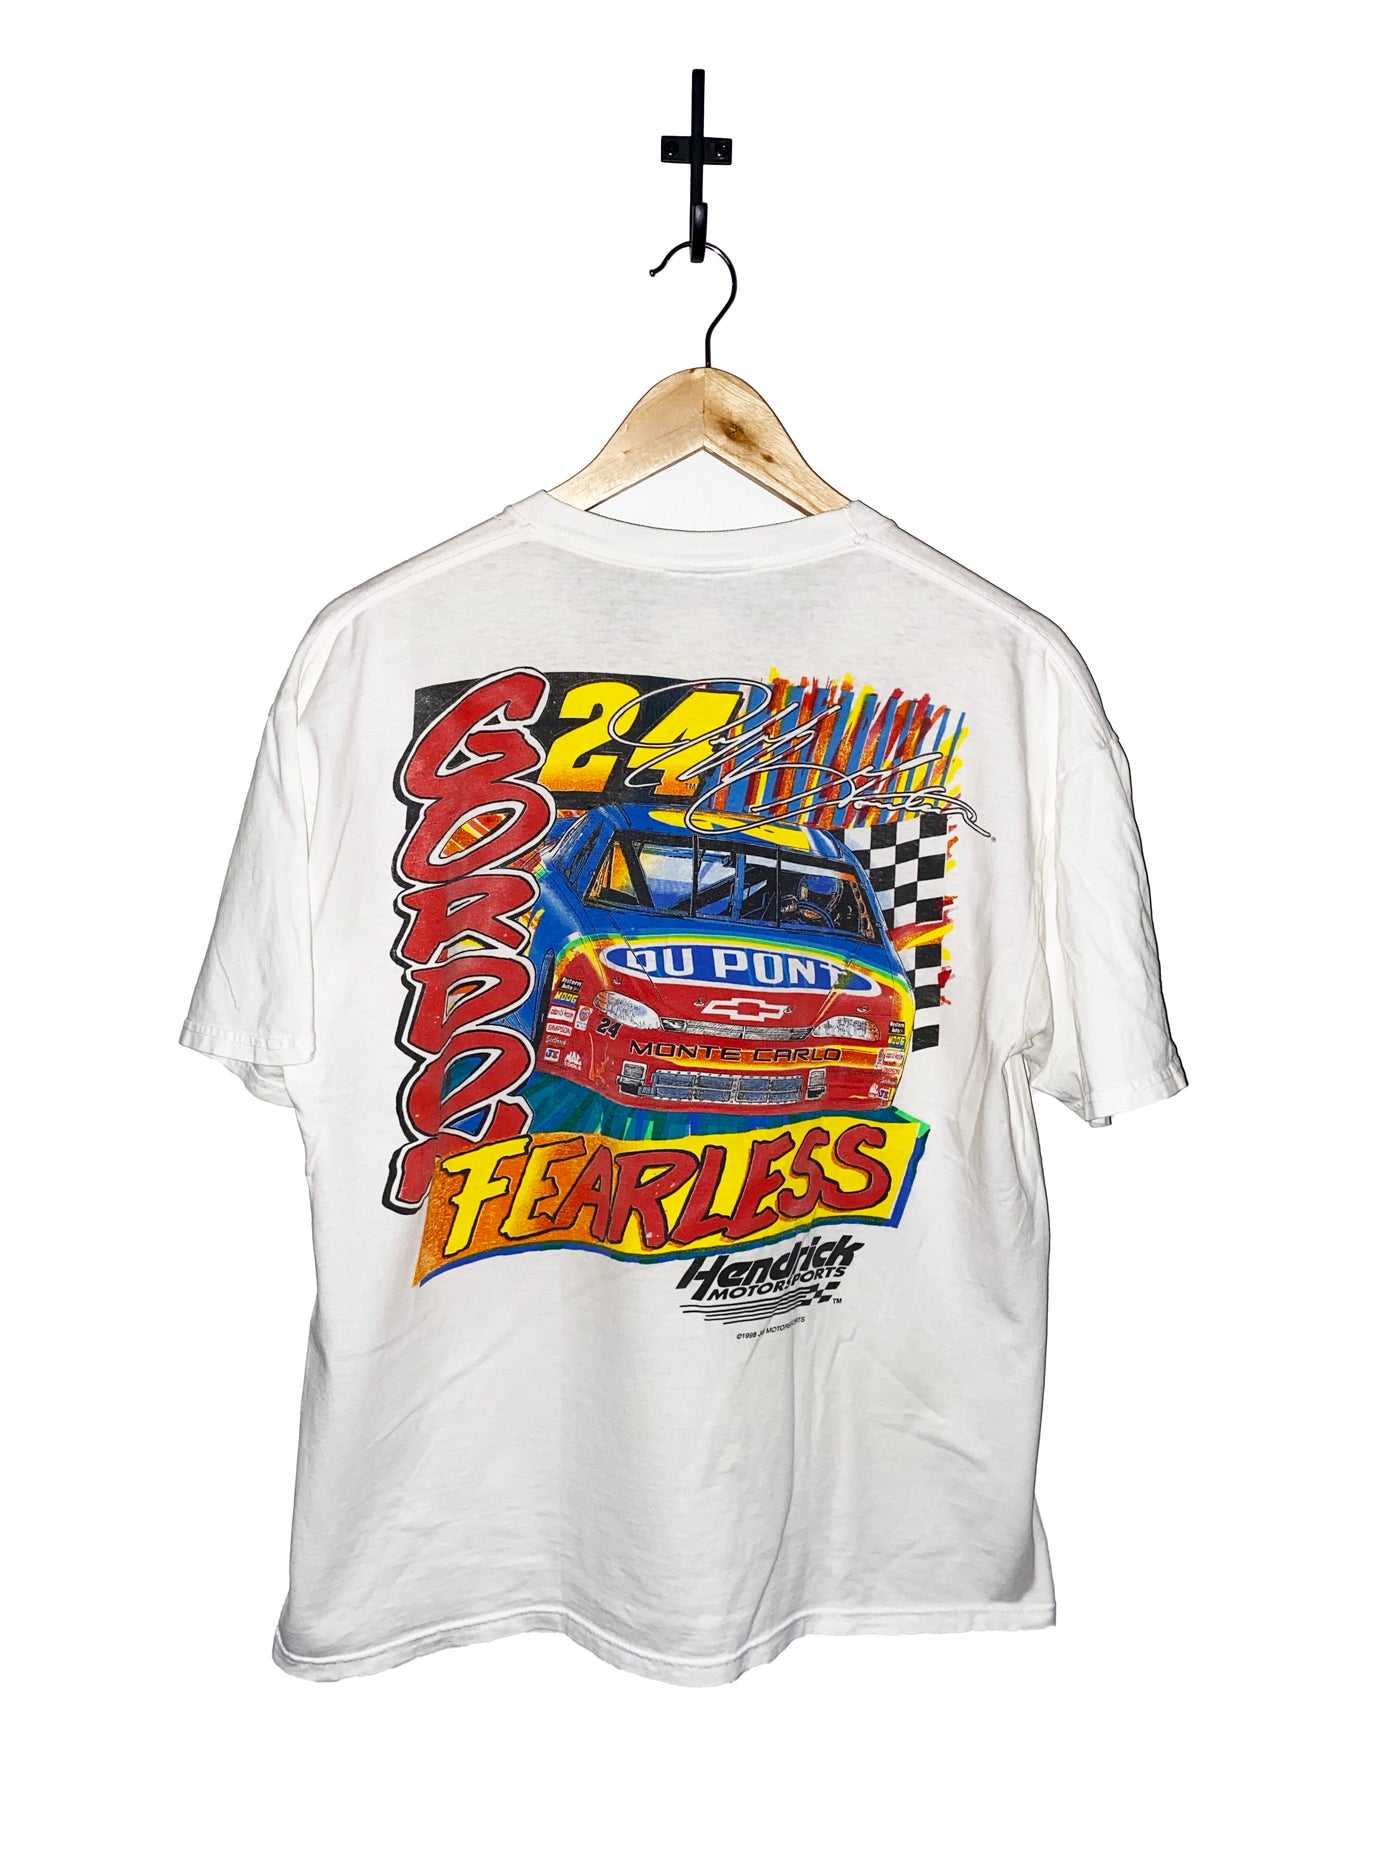 Vintage Jeff Gordon ‘Fearless’ Racing T-Shirt